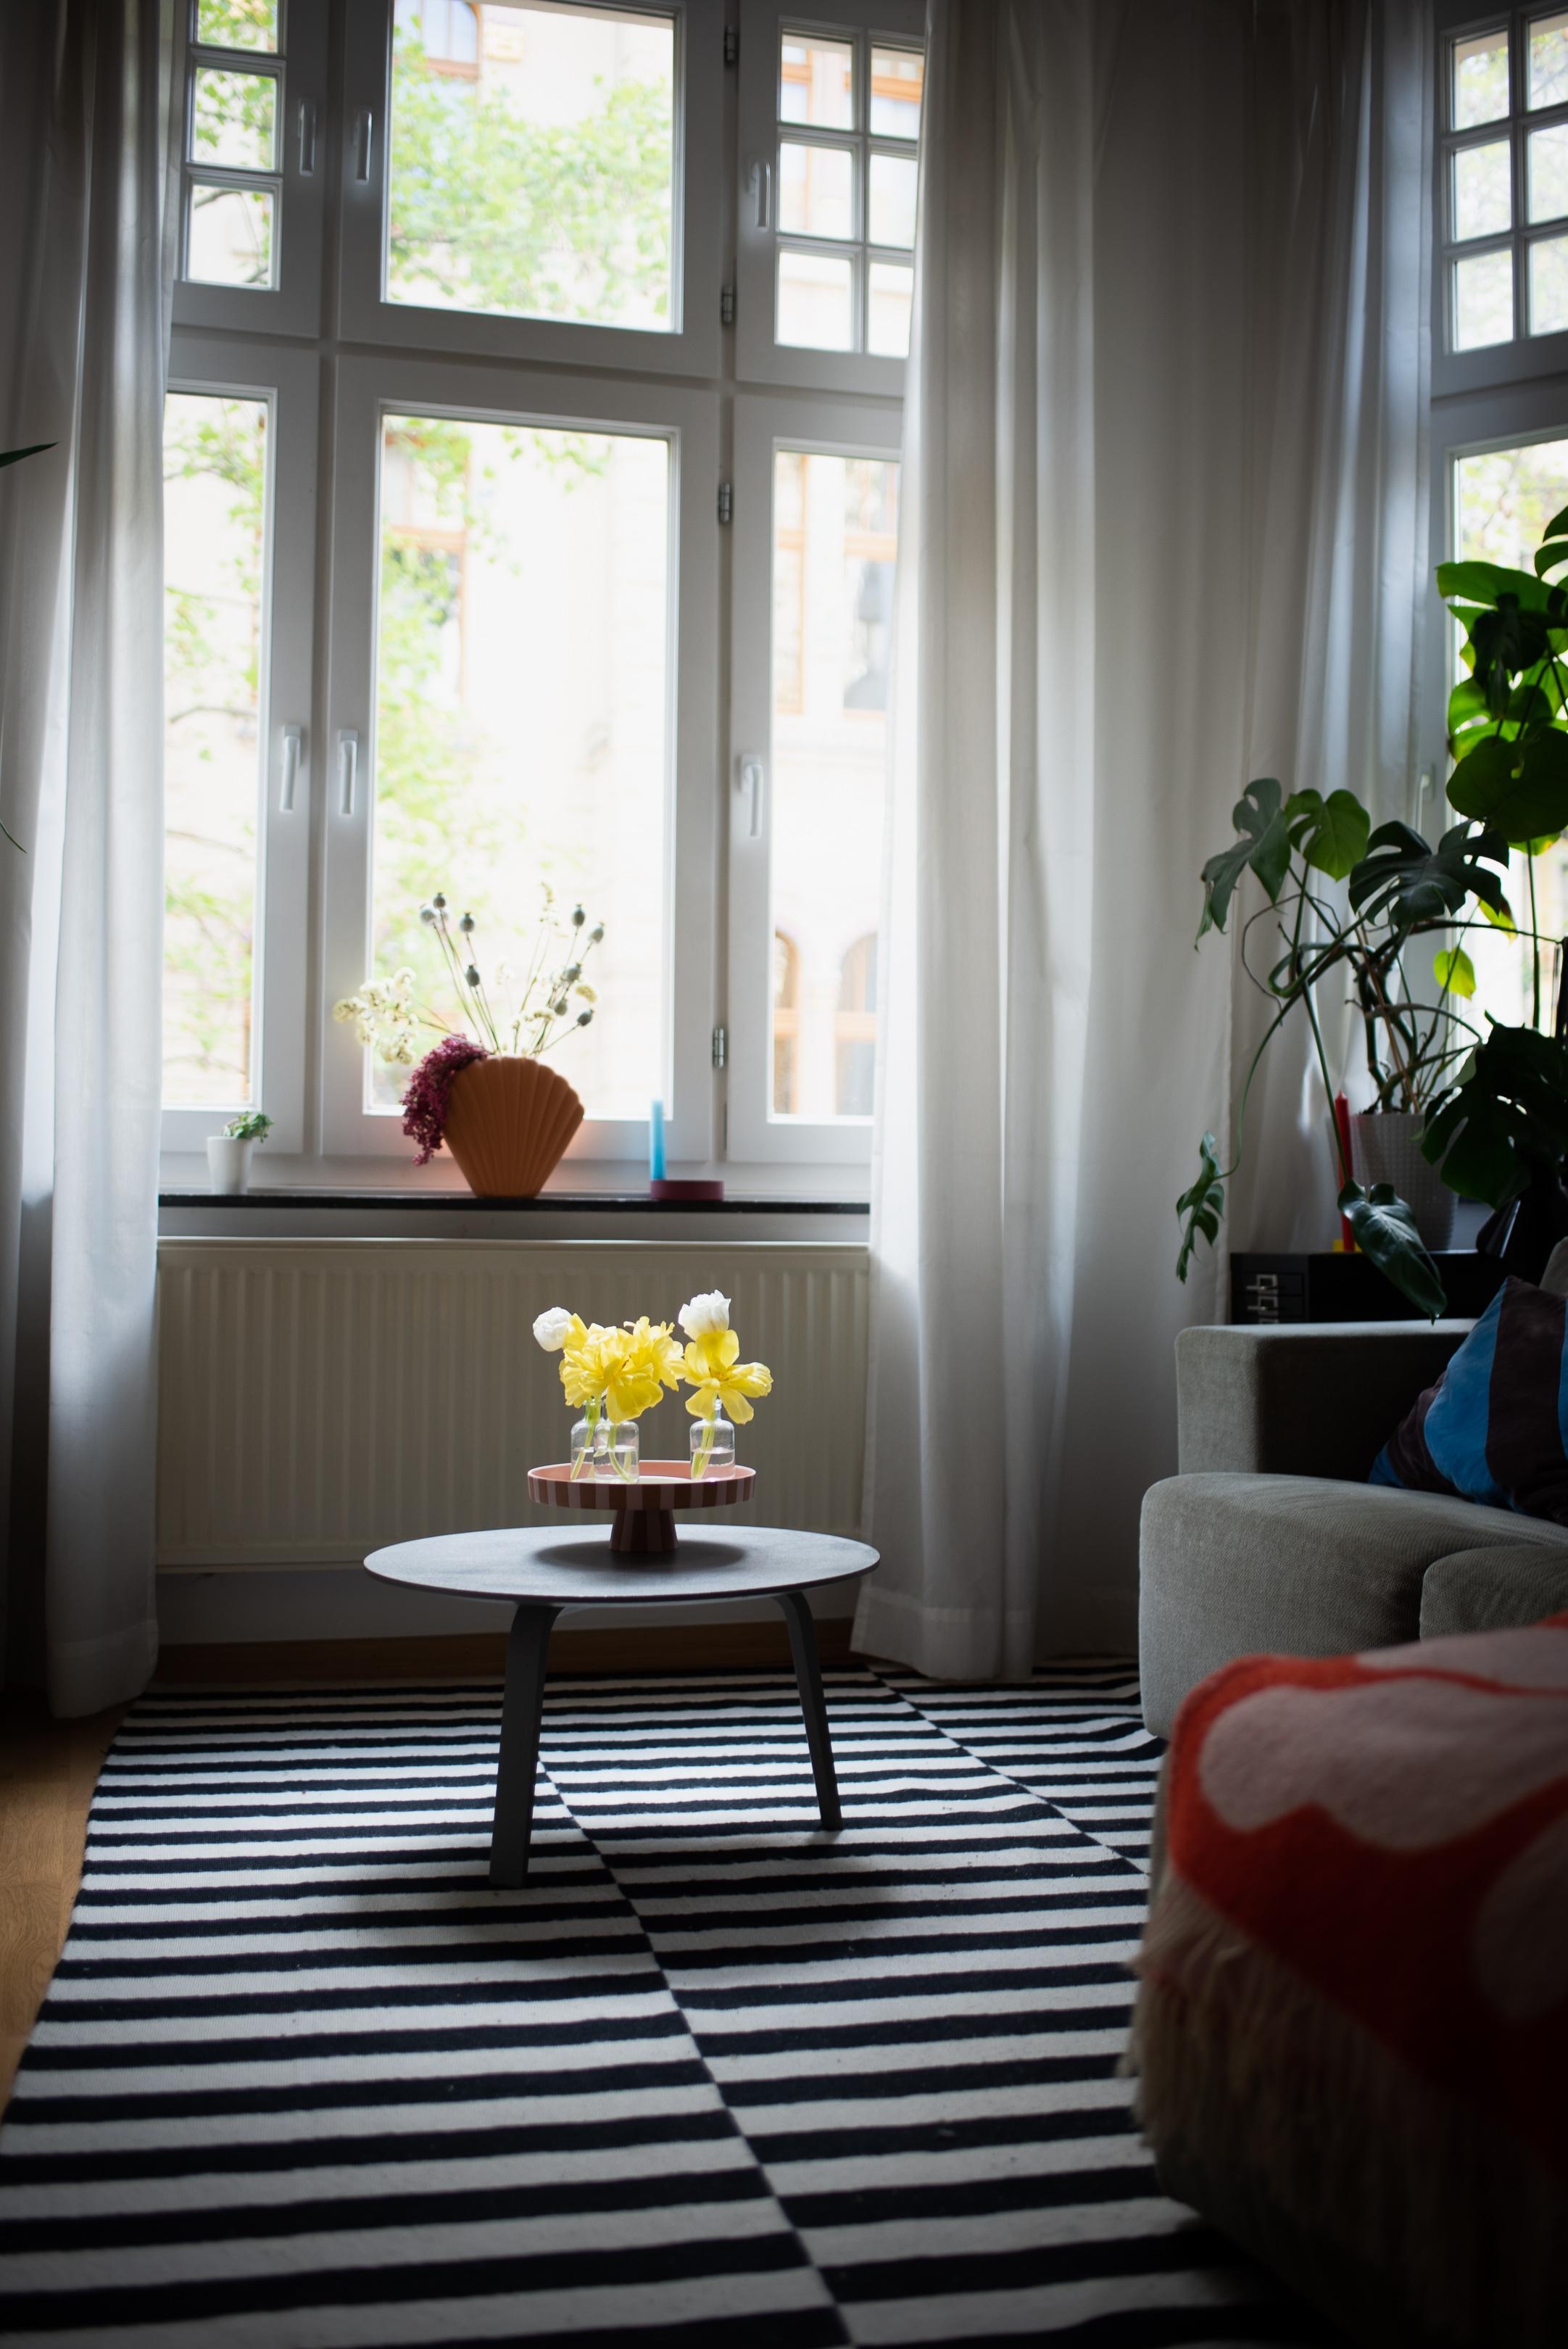 Sonne, wo bist du??? #interior #wohnzimmer #tulpen #wohnzimmertisch #dekoration #deco #interiorinspo #altbau